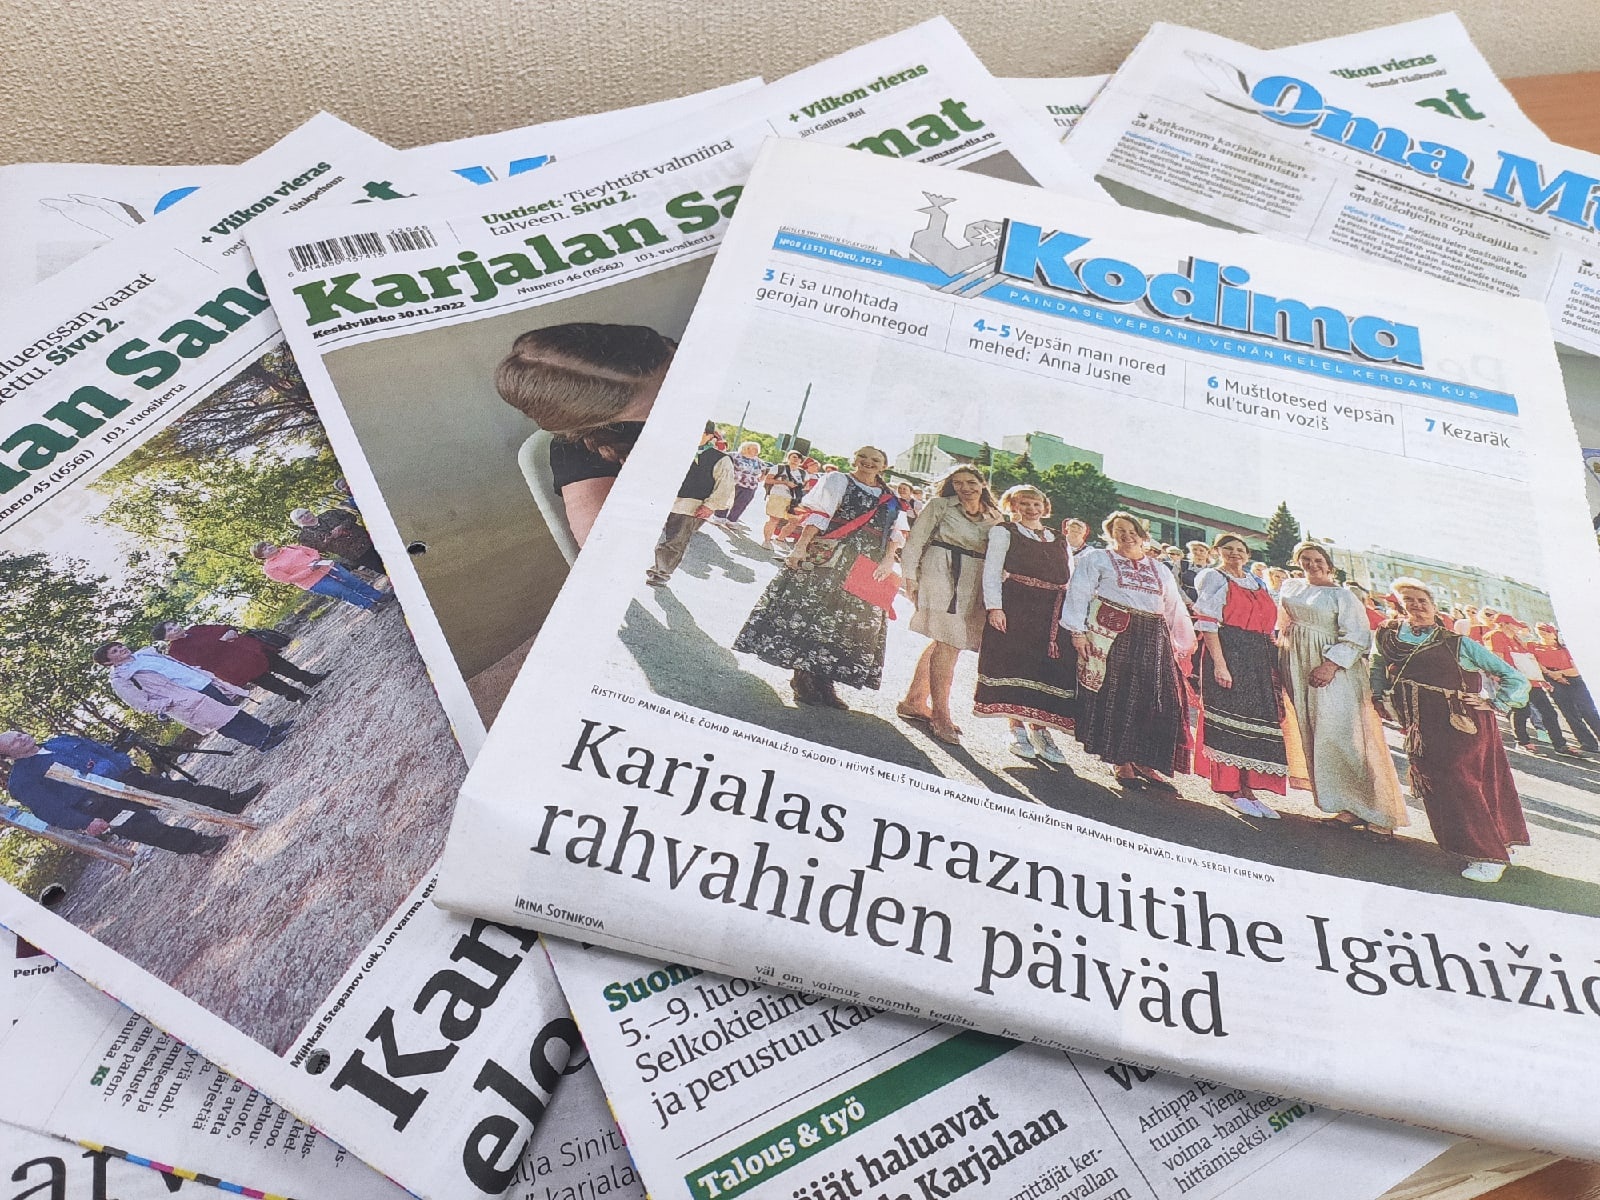 Karjalan vähemmistökieliset sanomalehdet kirjoittavat säännöllisesti ajankohtaisista aiheista, jotka koskevat muun muassa tasavallan alkuperäiskansojen kielten säilyttämistä ja kehittämistä. Kuva: Jekaterina Pospelova